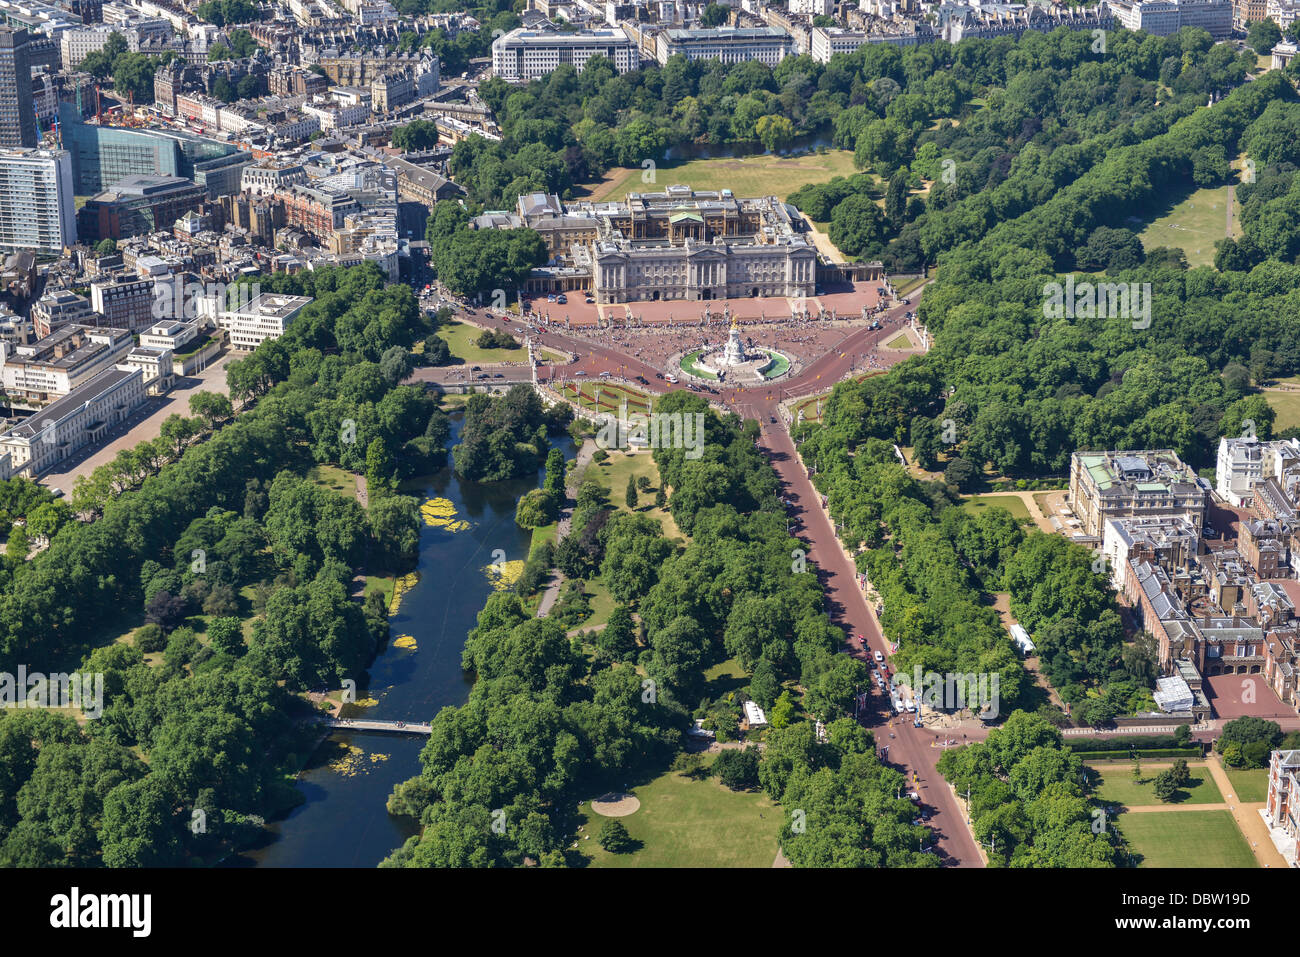 Fotografía aérea de Buckingham Palace, el centro comercial y el parque St James' Park Foto de stock